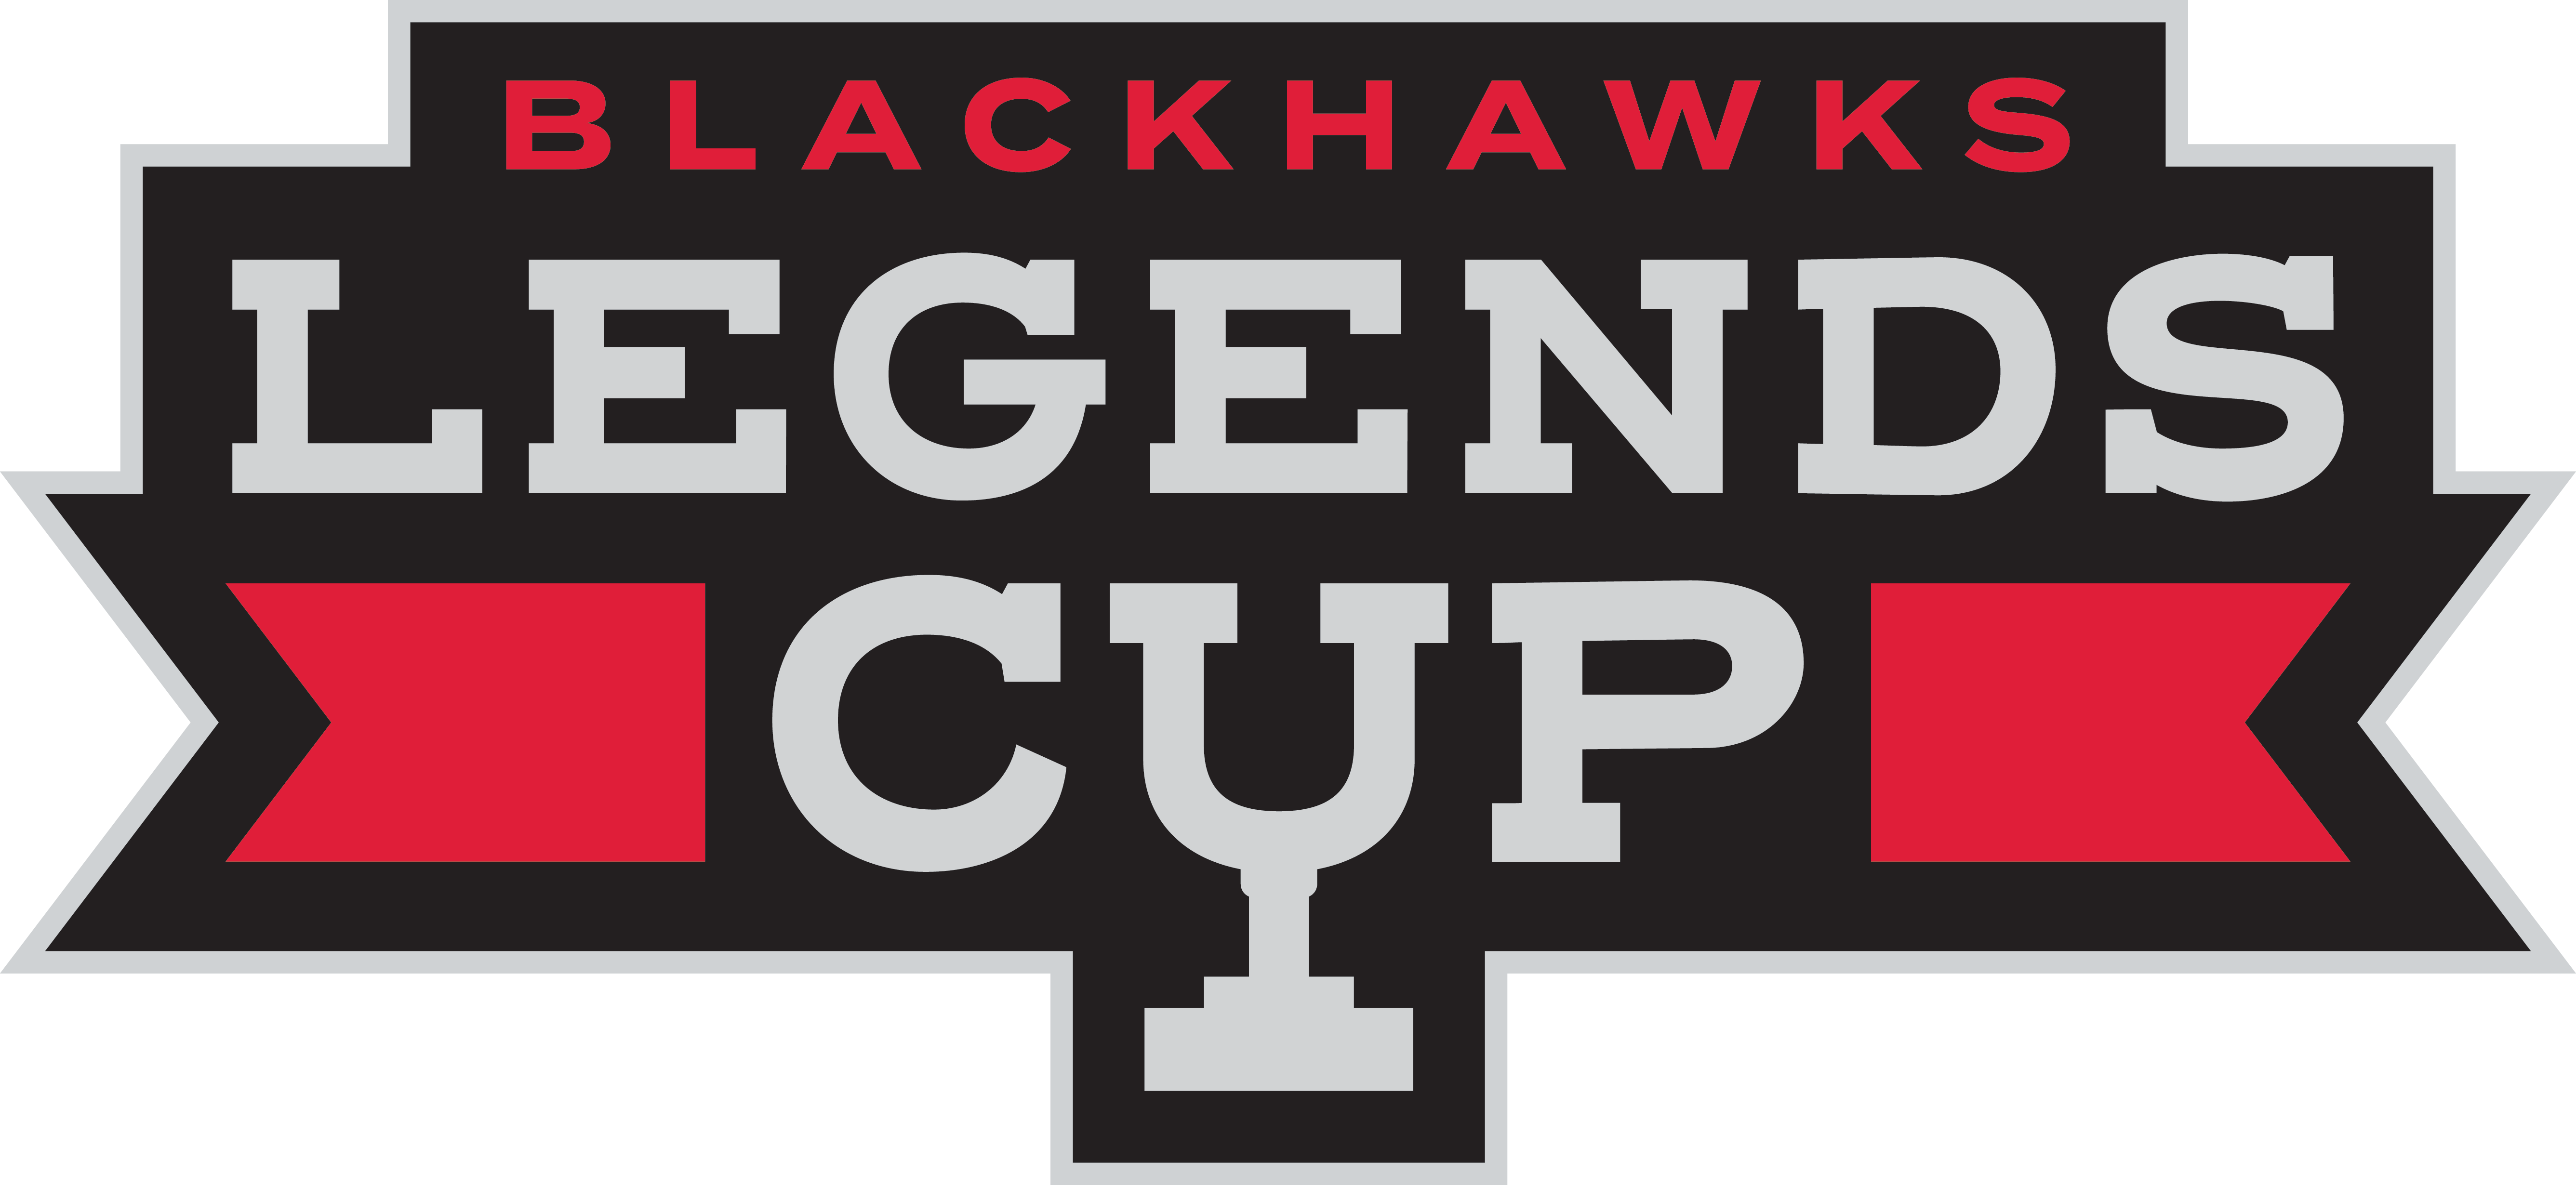 Blackhawks Legends Cup